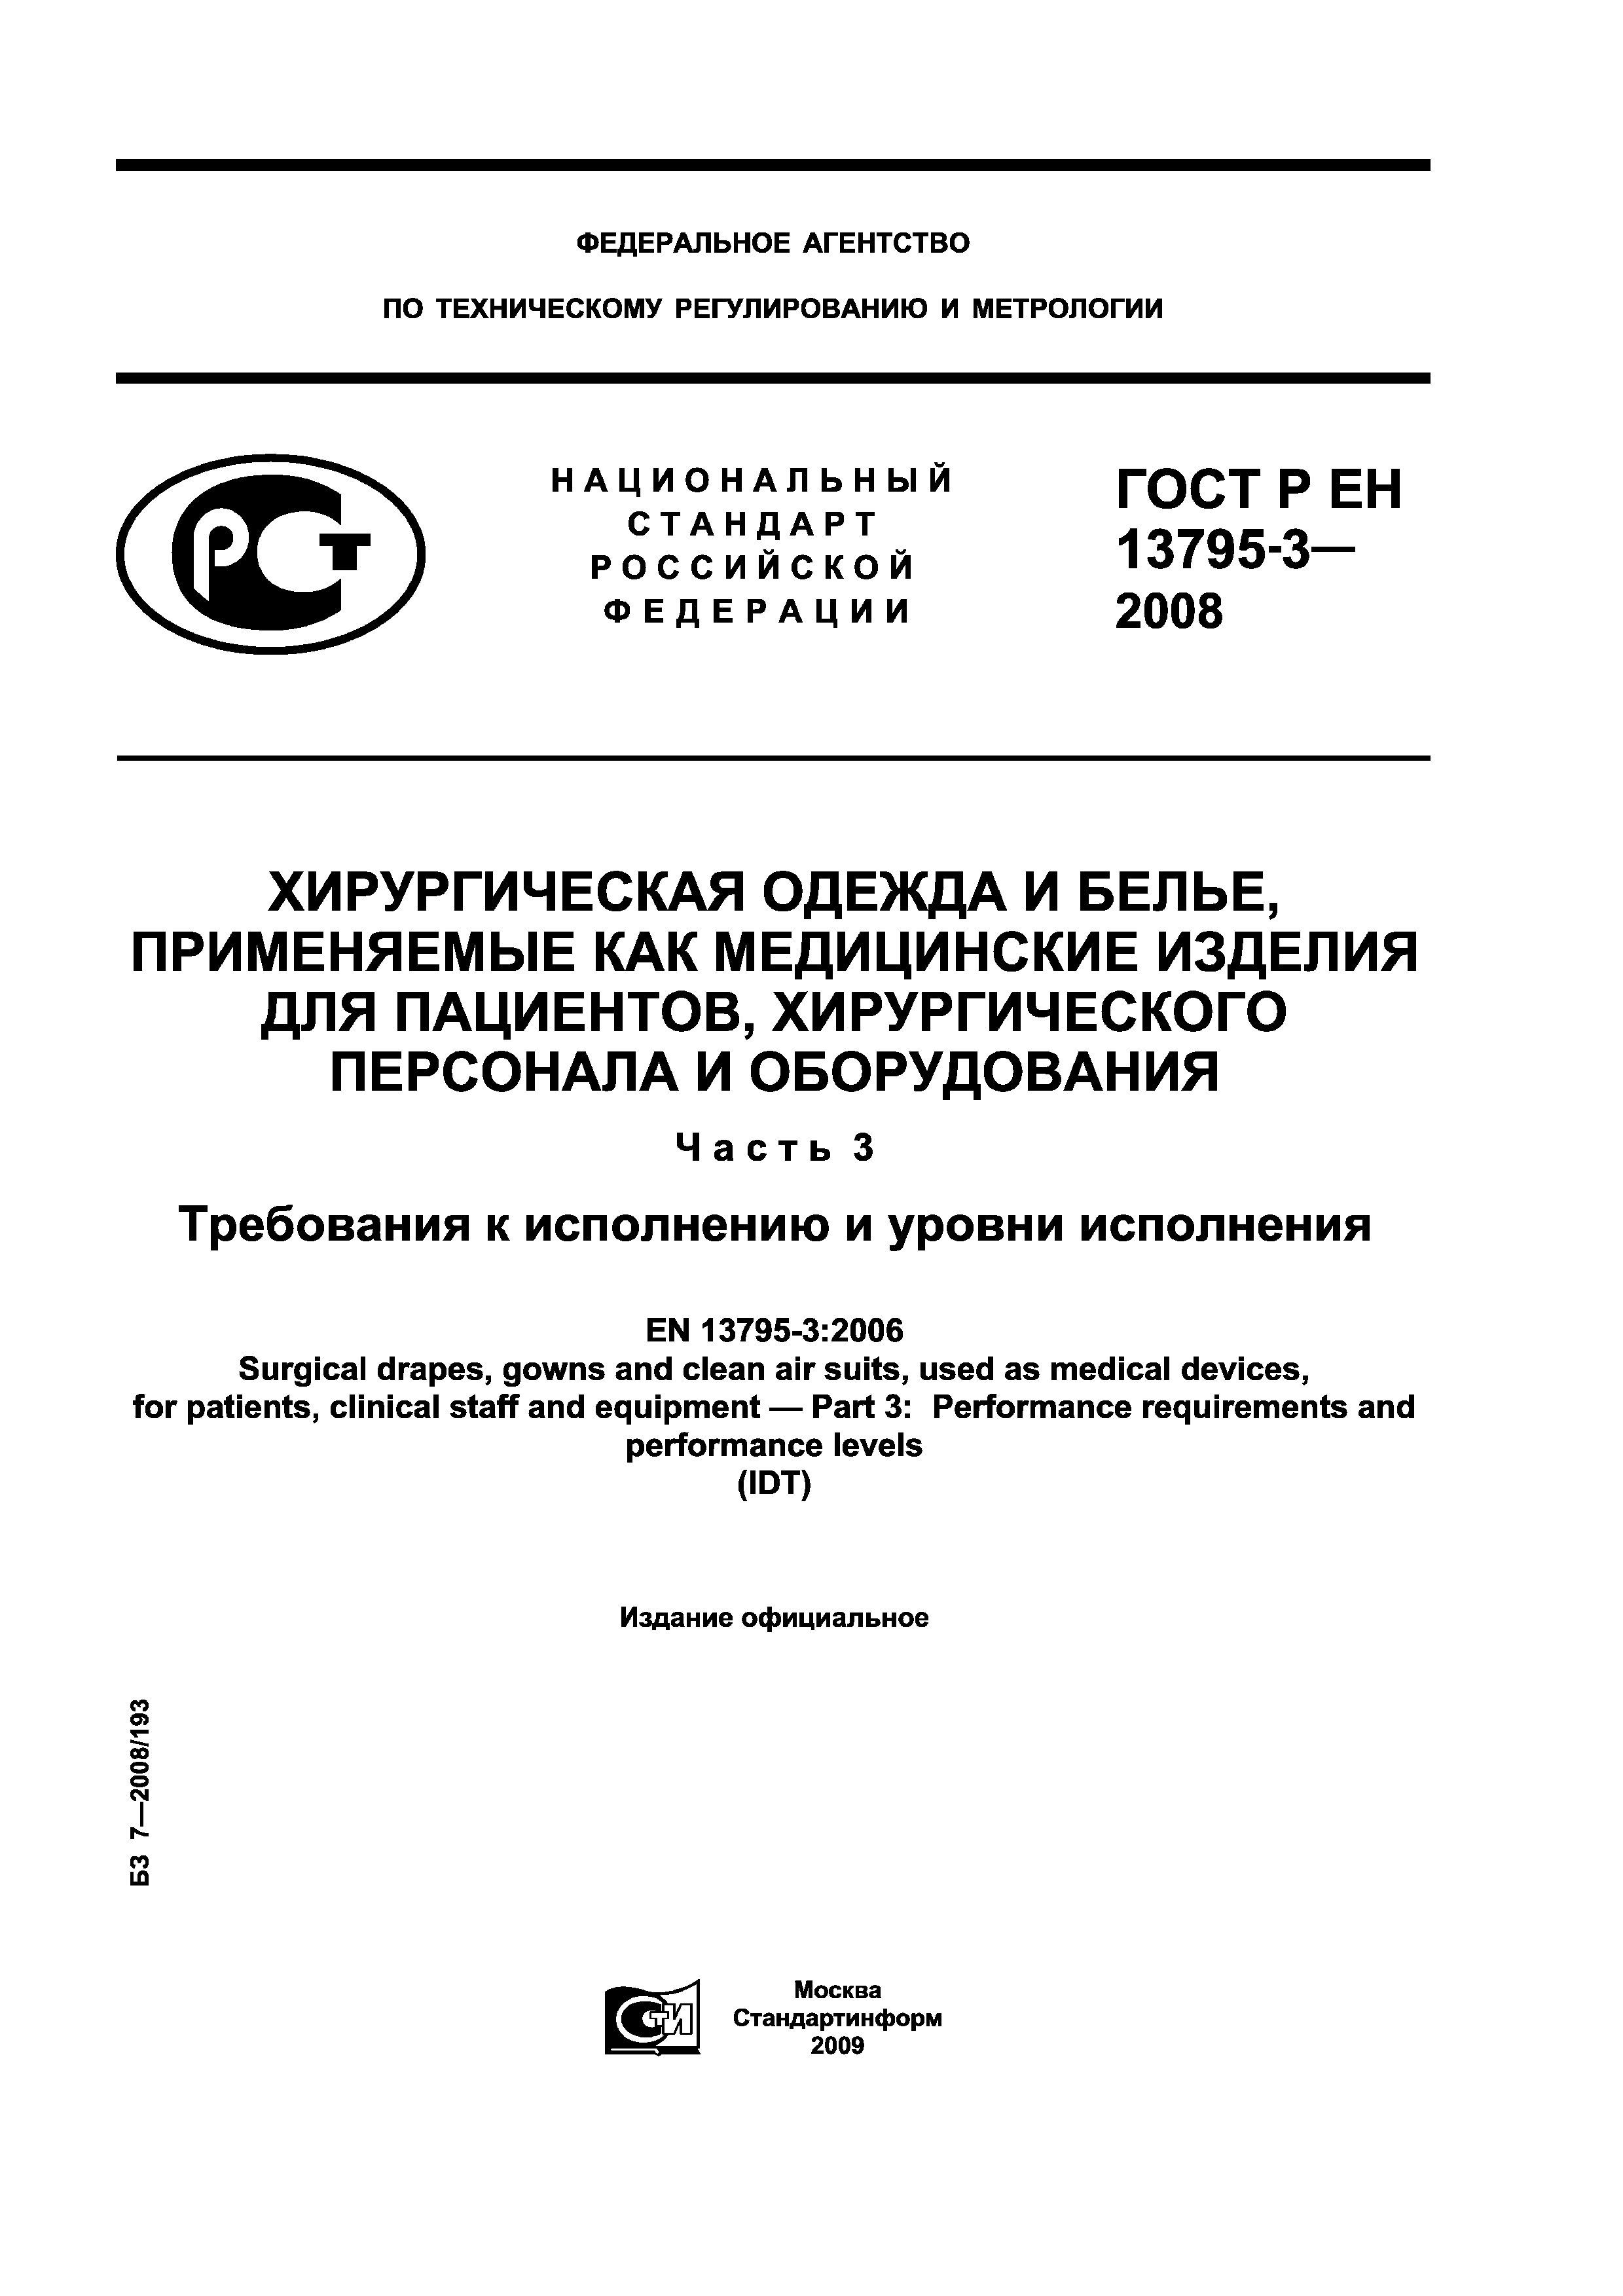 ГОСТ Р ЕН 13795-3-2008